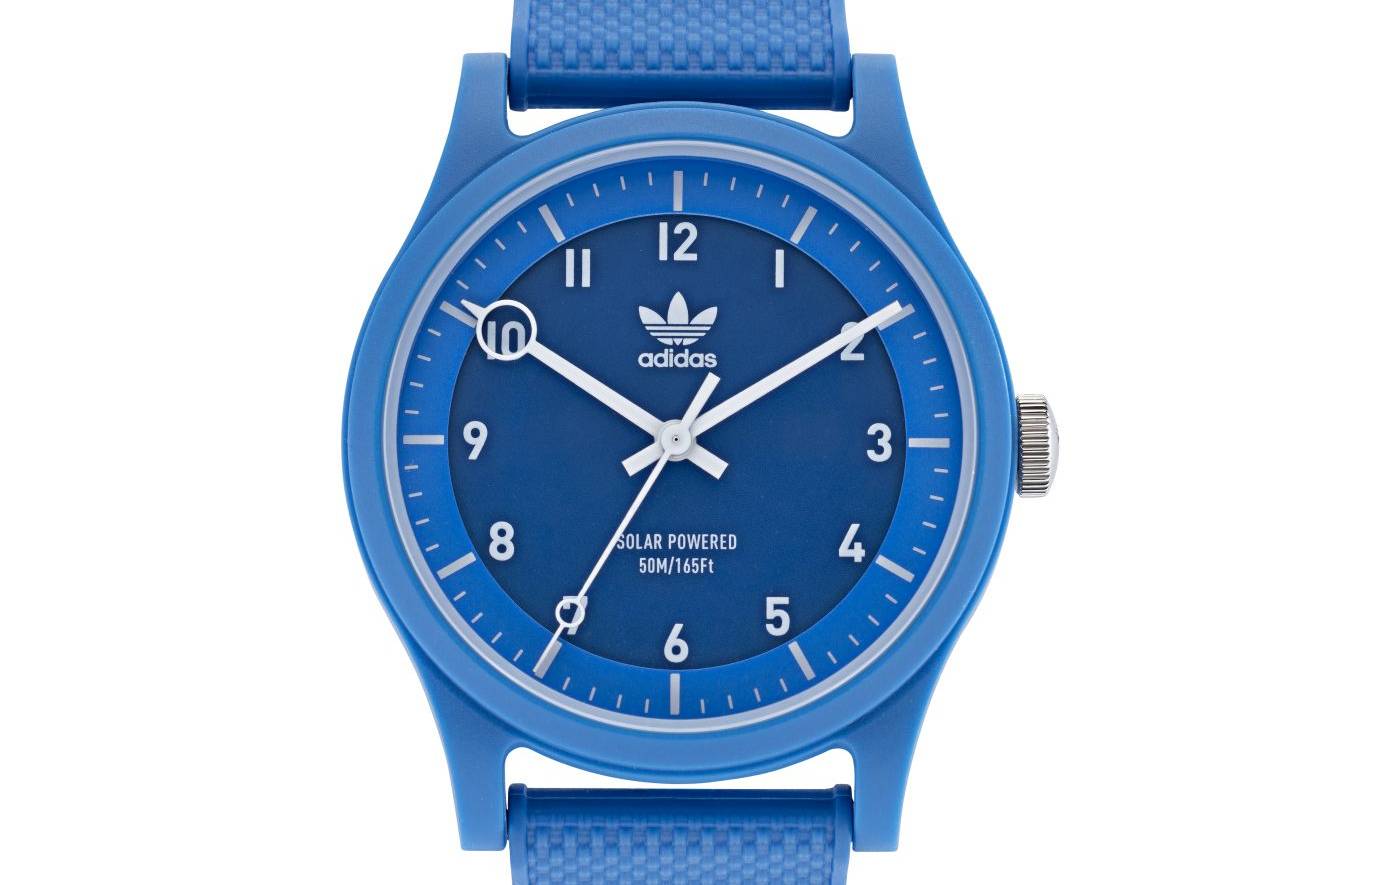 Timex Group lanza una nueva campaña para relojes Adidas originales